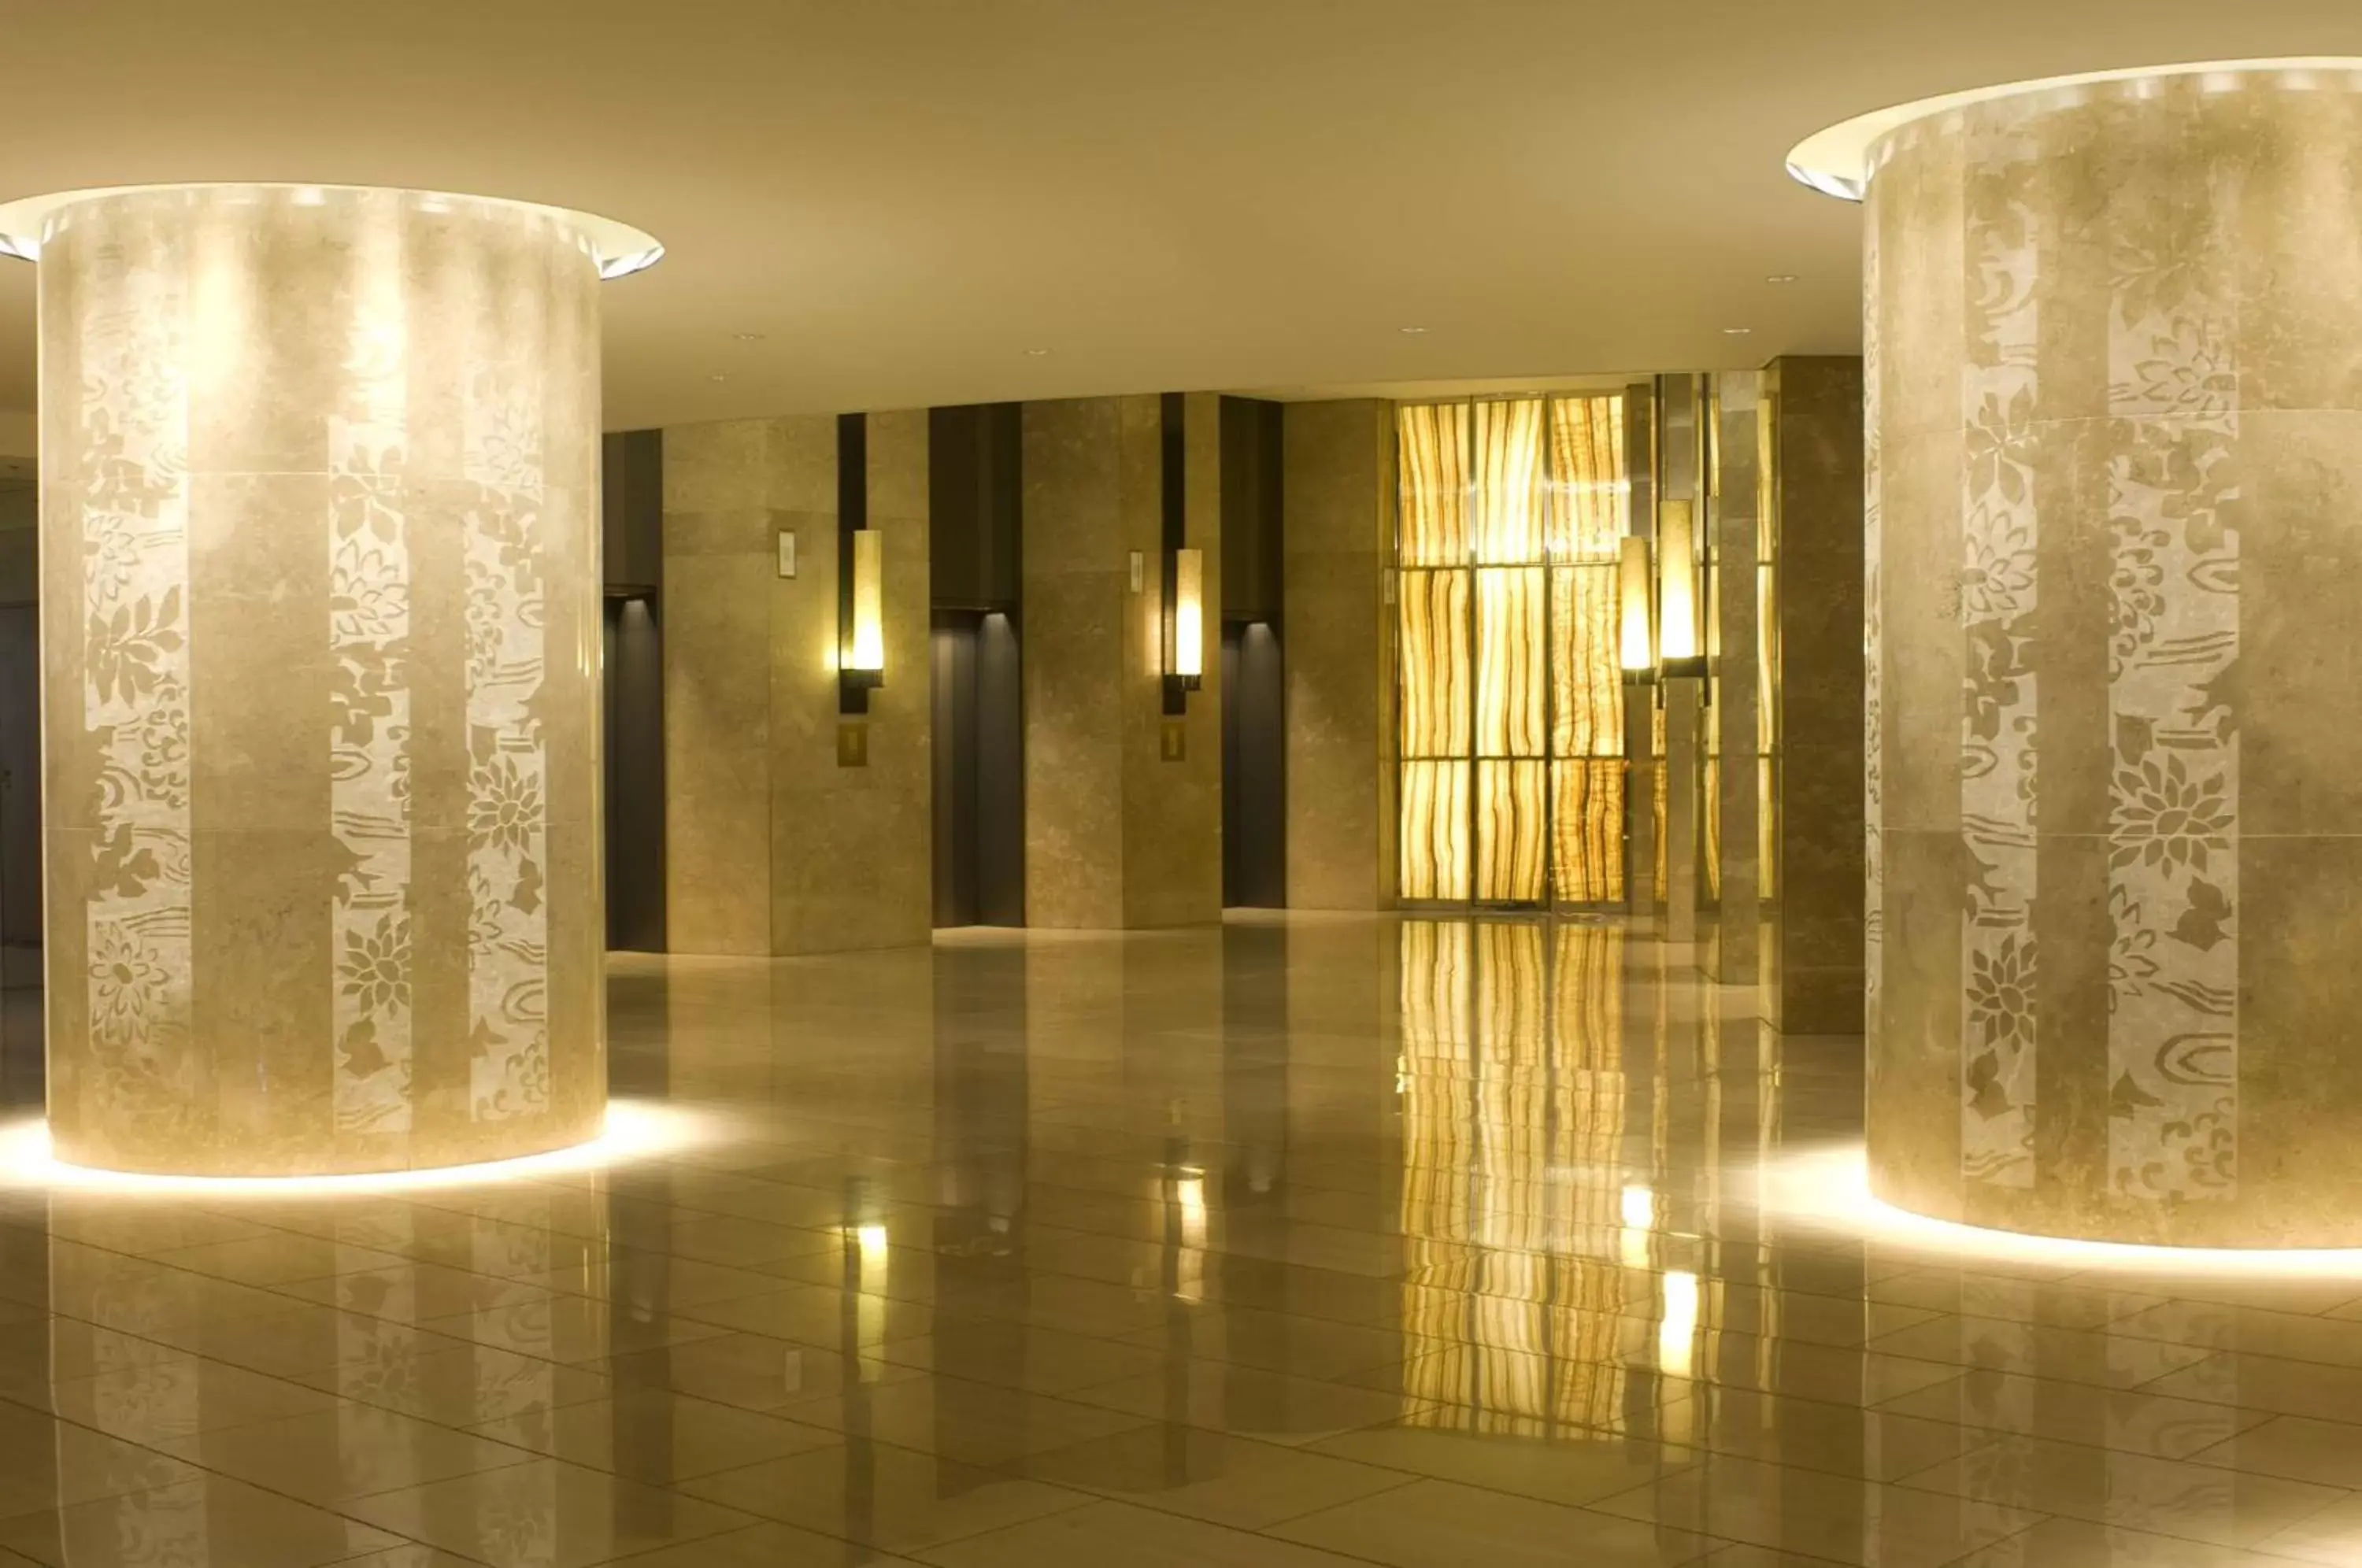 Lobby or reception, Bathroom in Hilton Tokyo Hotel